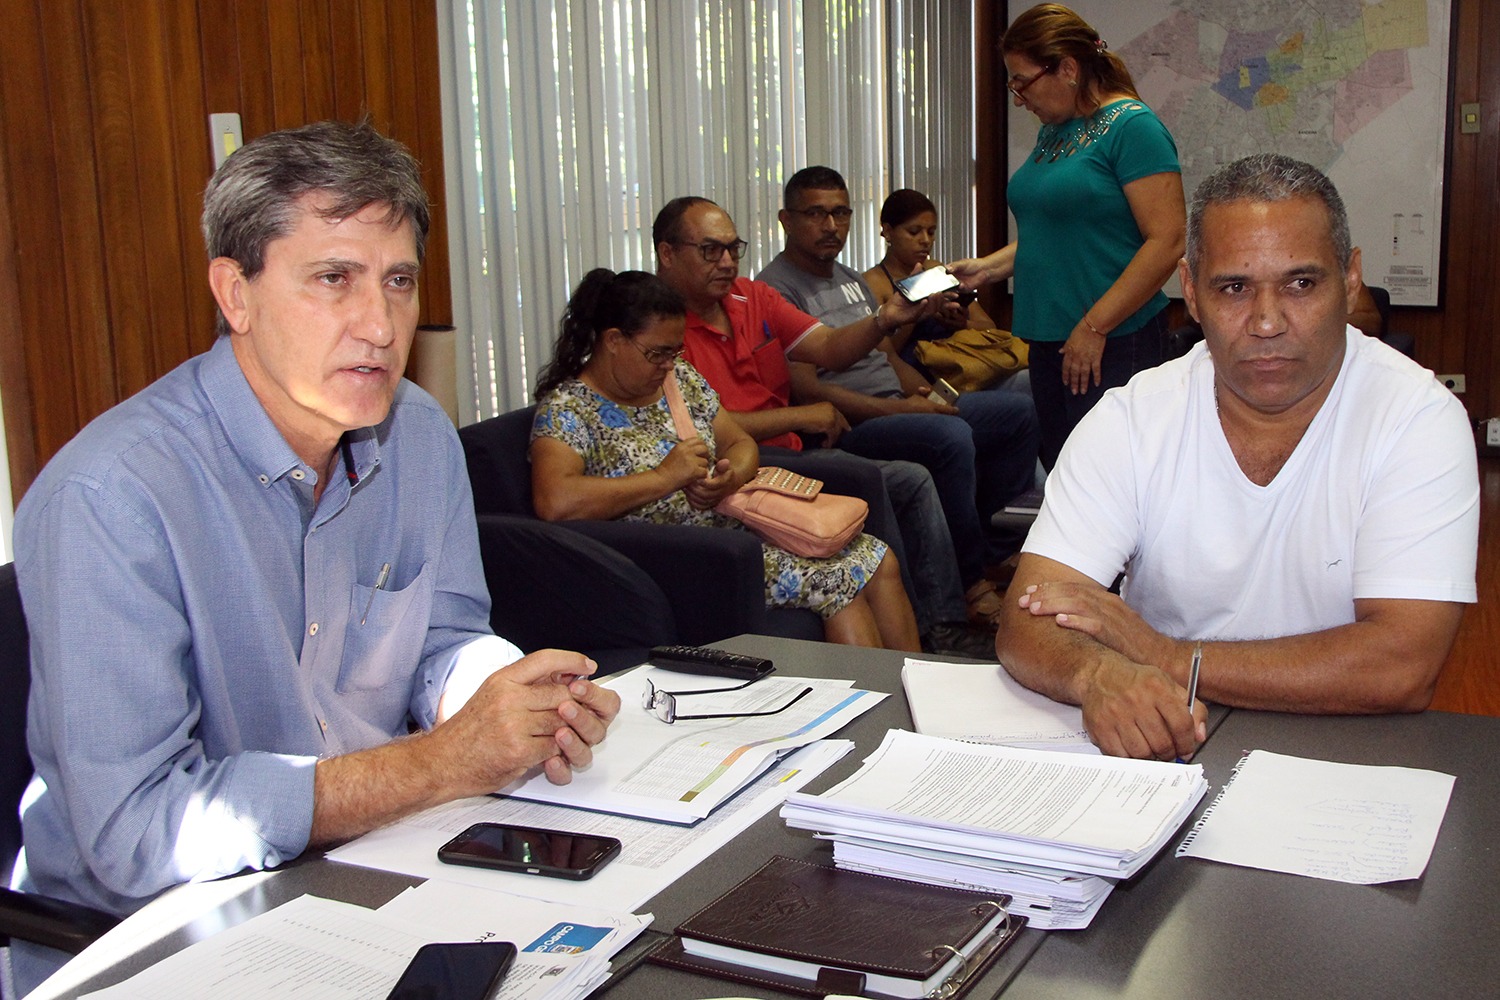 Chiquinho Telles fortalece trabalho de lideranças comunitárias de Campo Grande